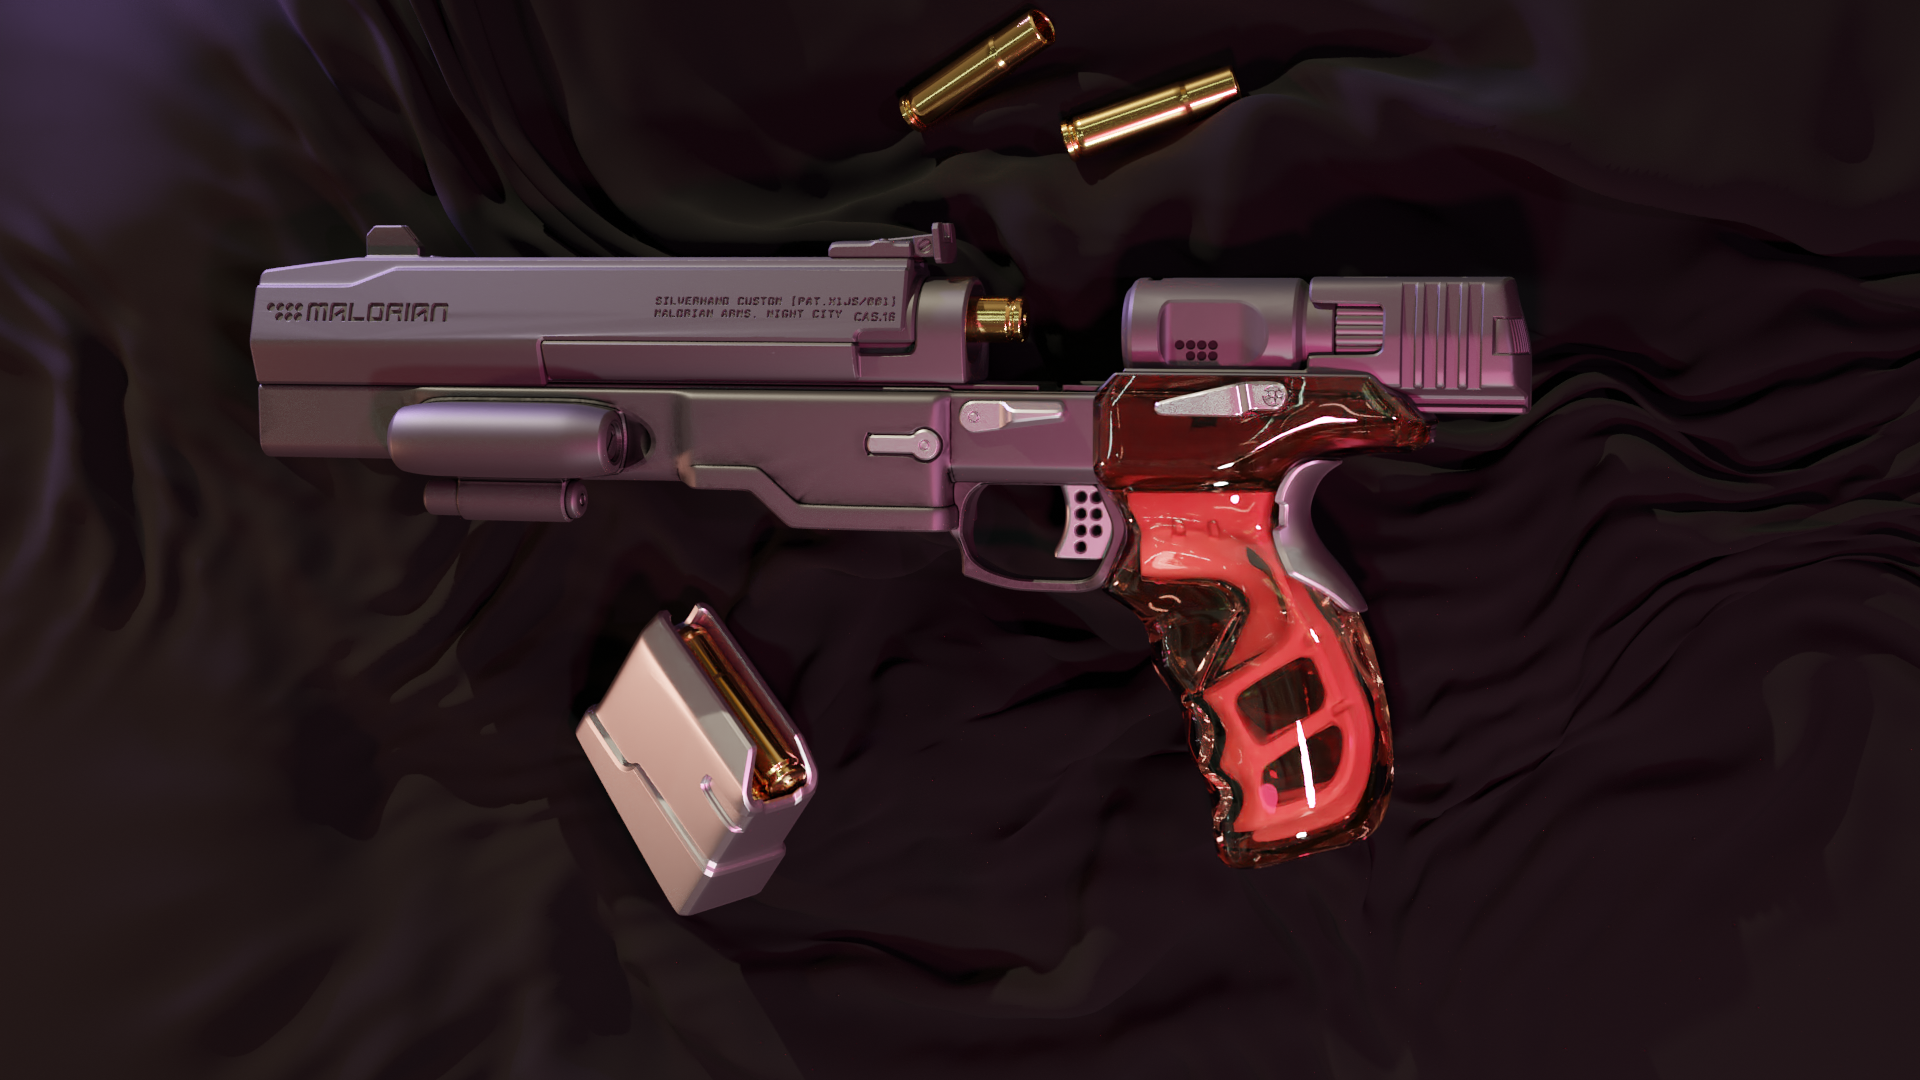 Cyberpunk gun 3d model фото 31